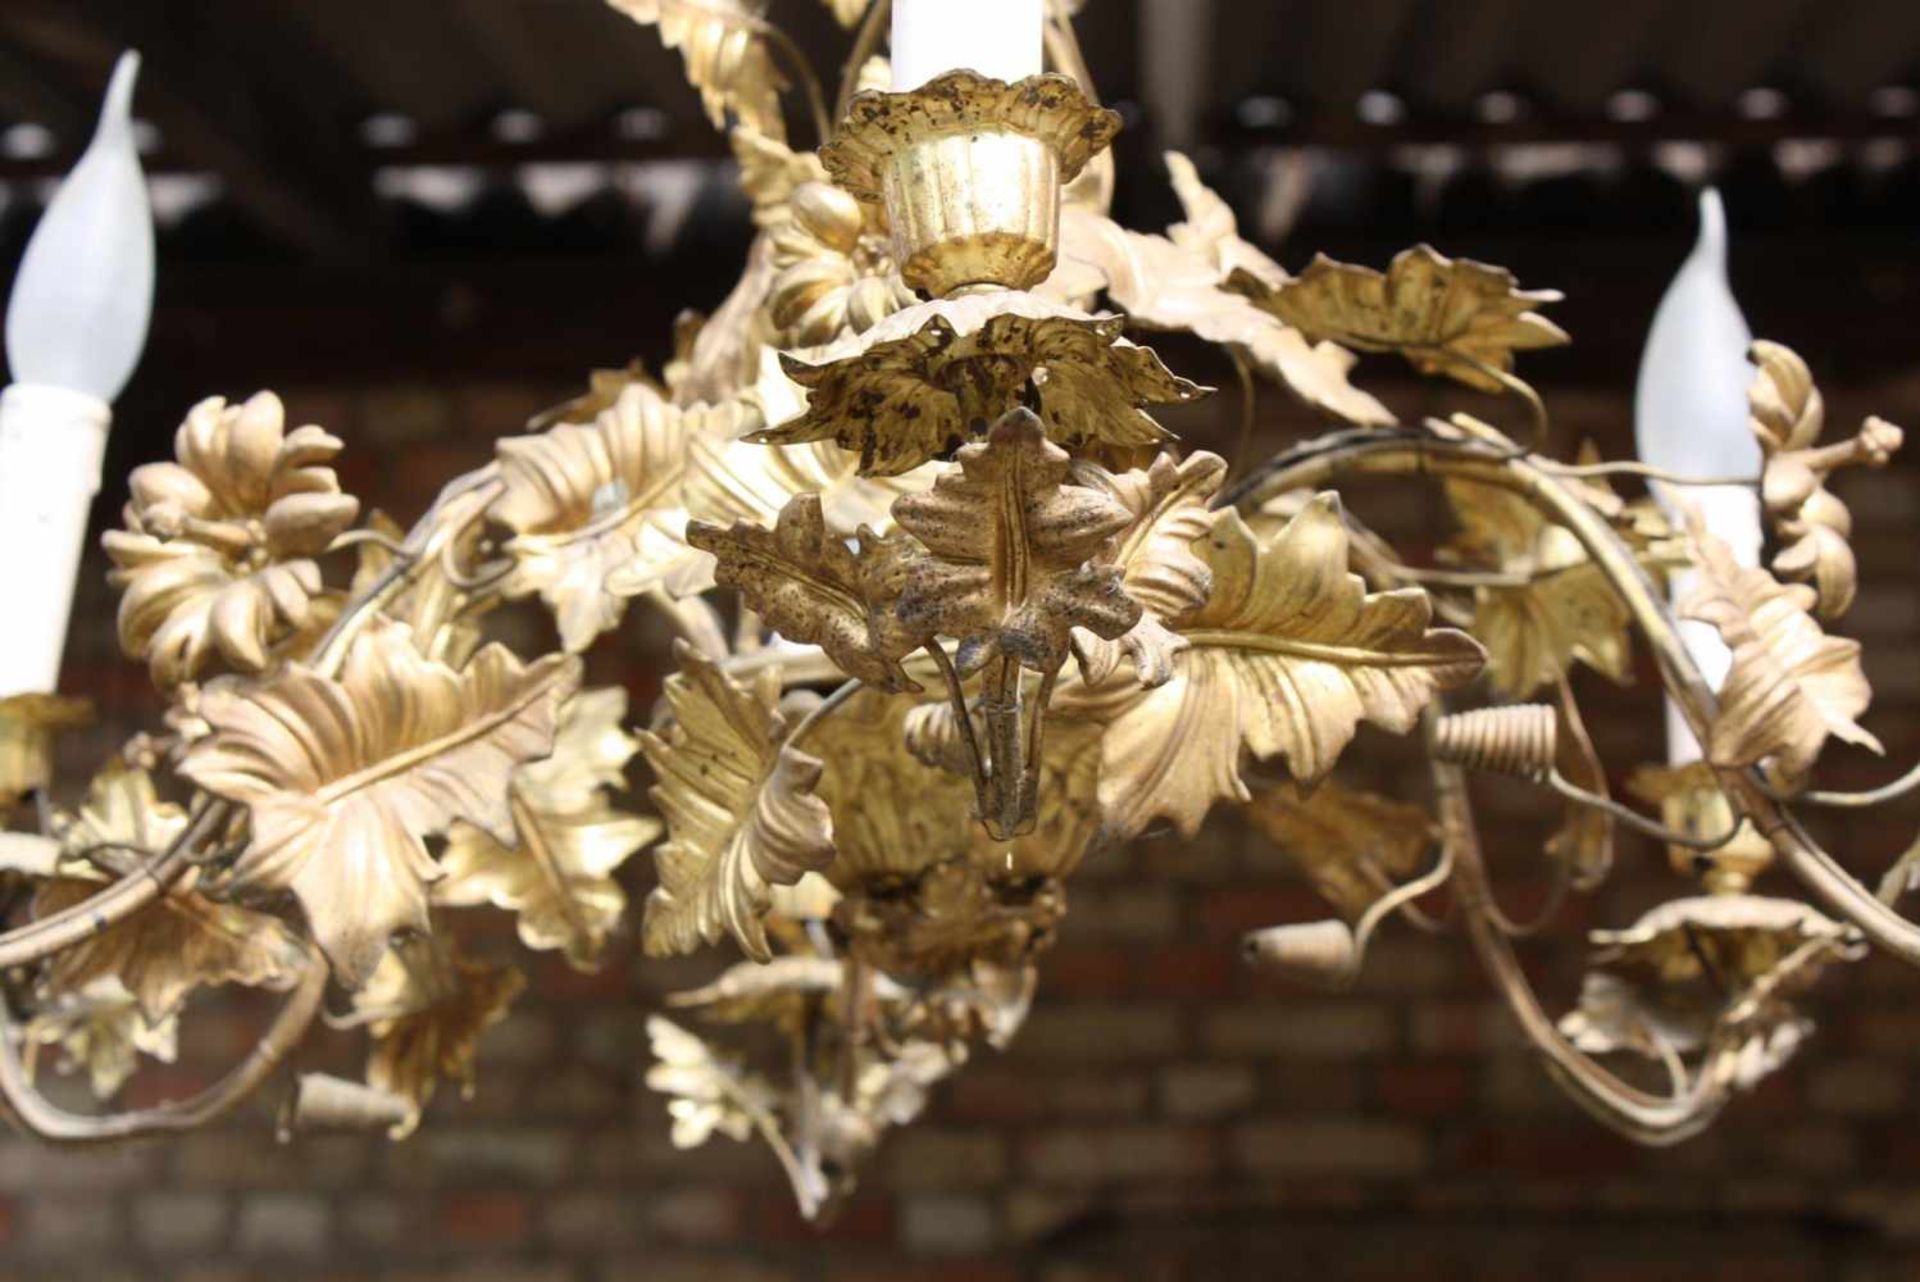 Hängelampe im Florentiner-StilDekorative Lampe aus vergoldetem Metallblech, sechs Brennstellen. Höhe - Bild 3 aus 3